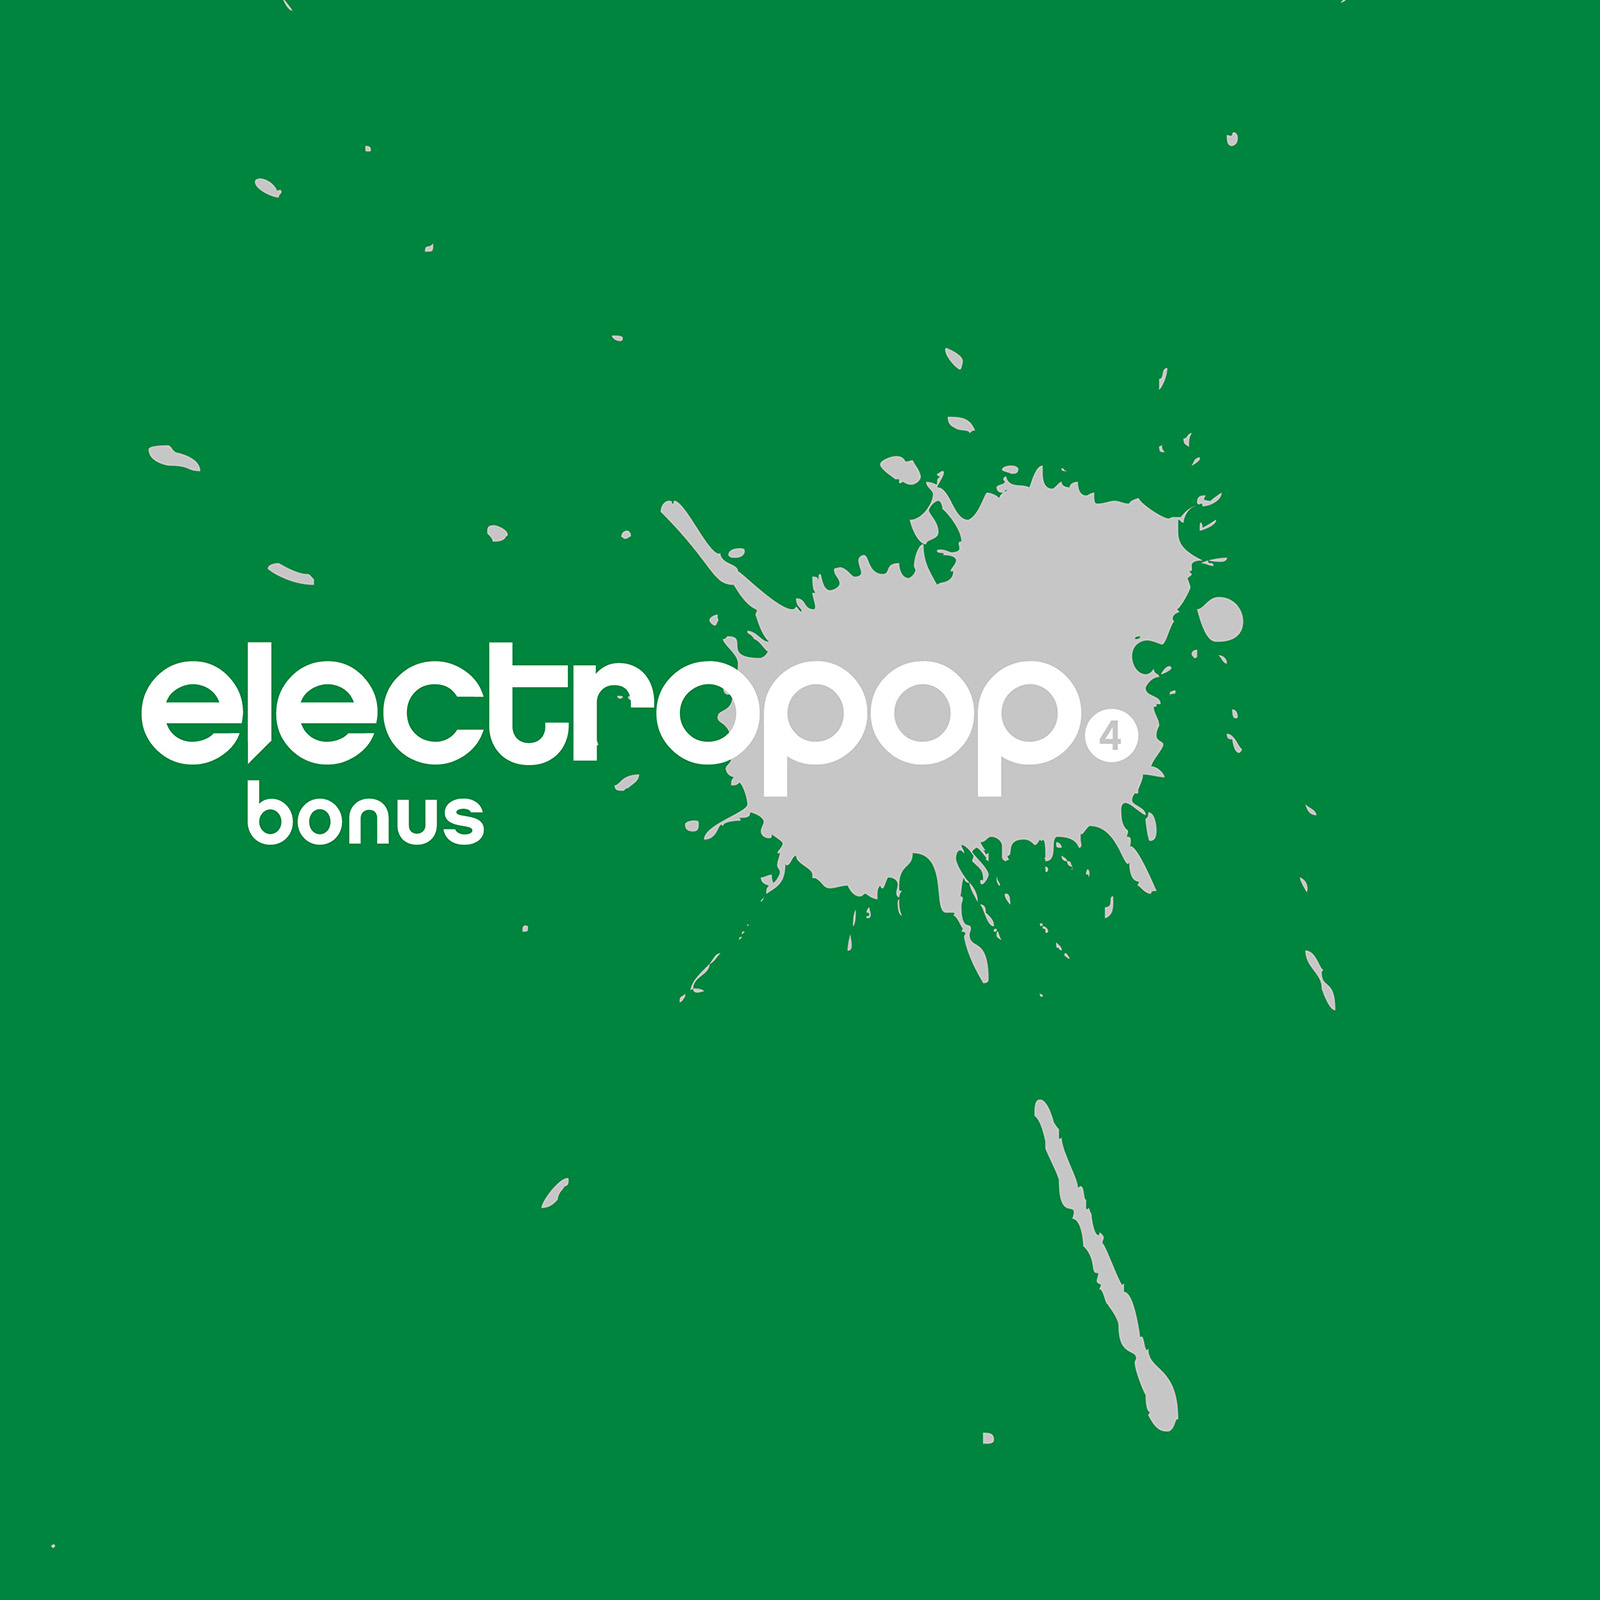 electropop.19 bonus 4